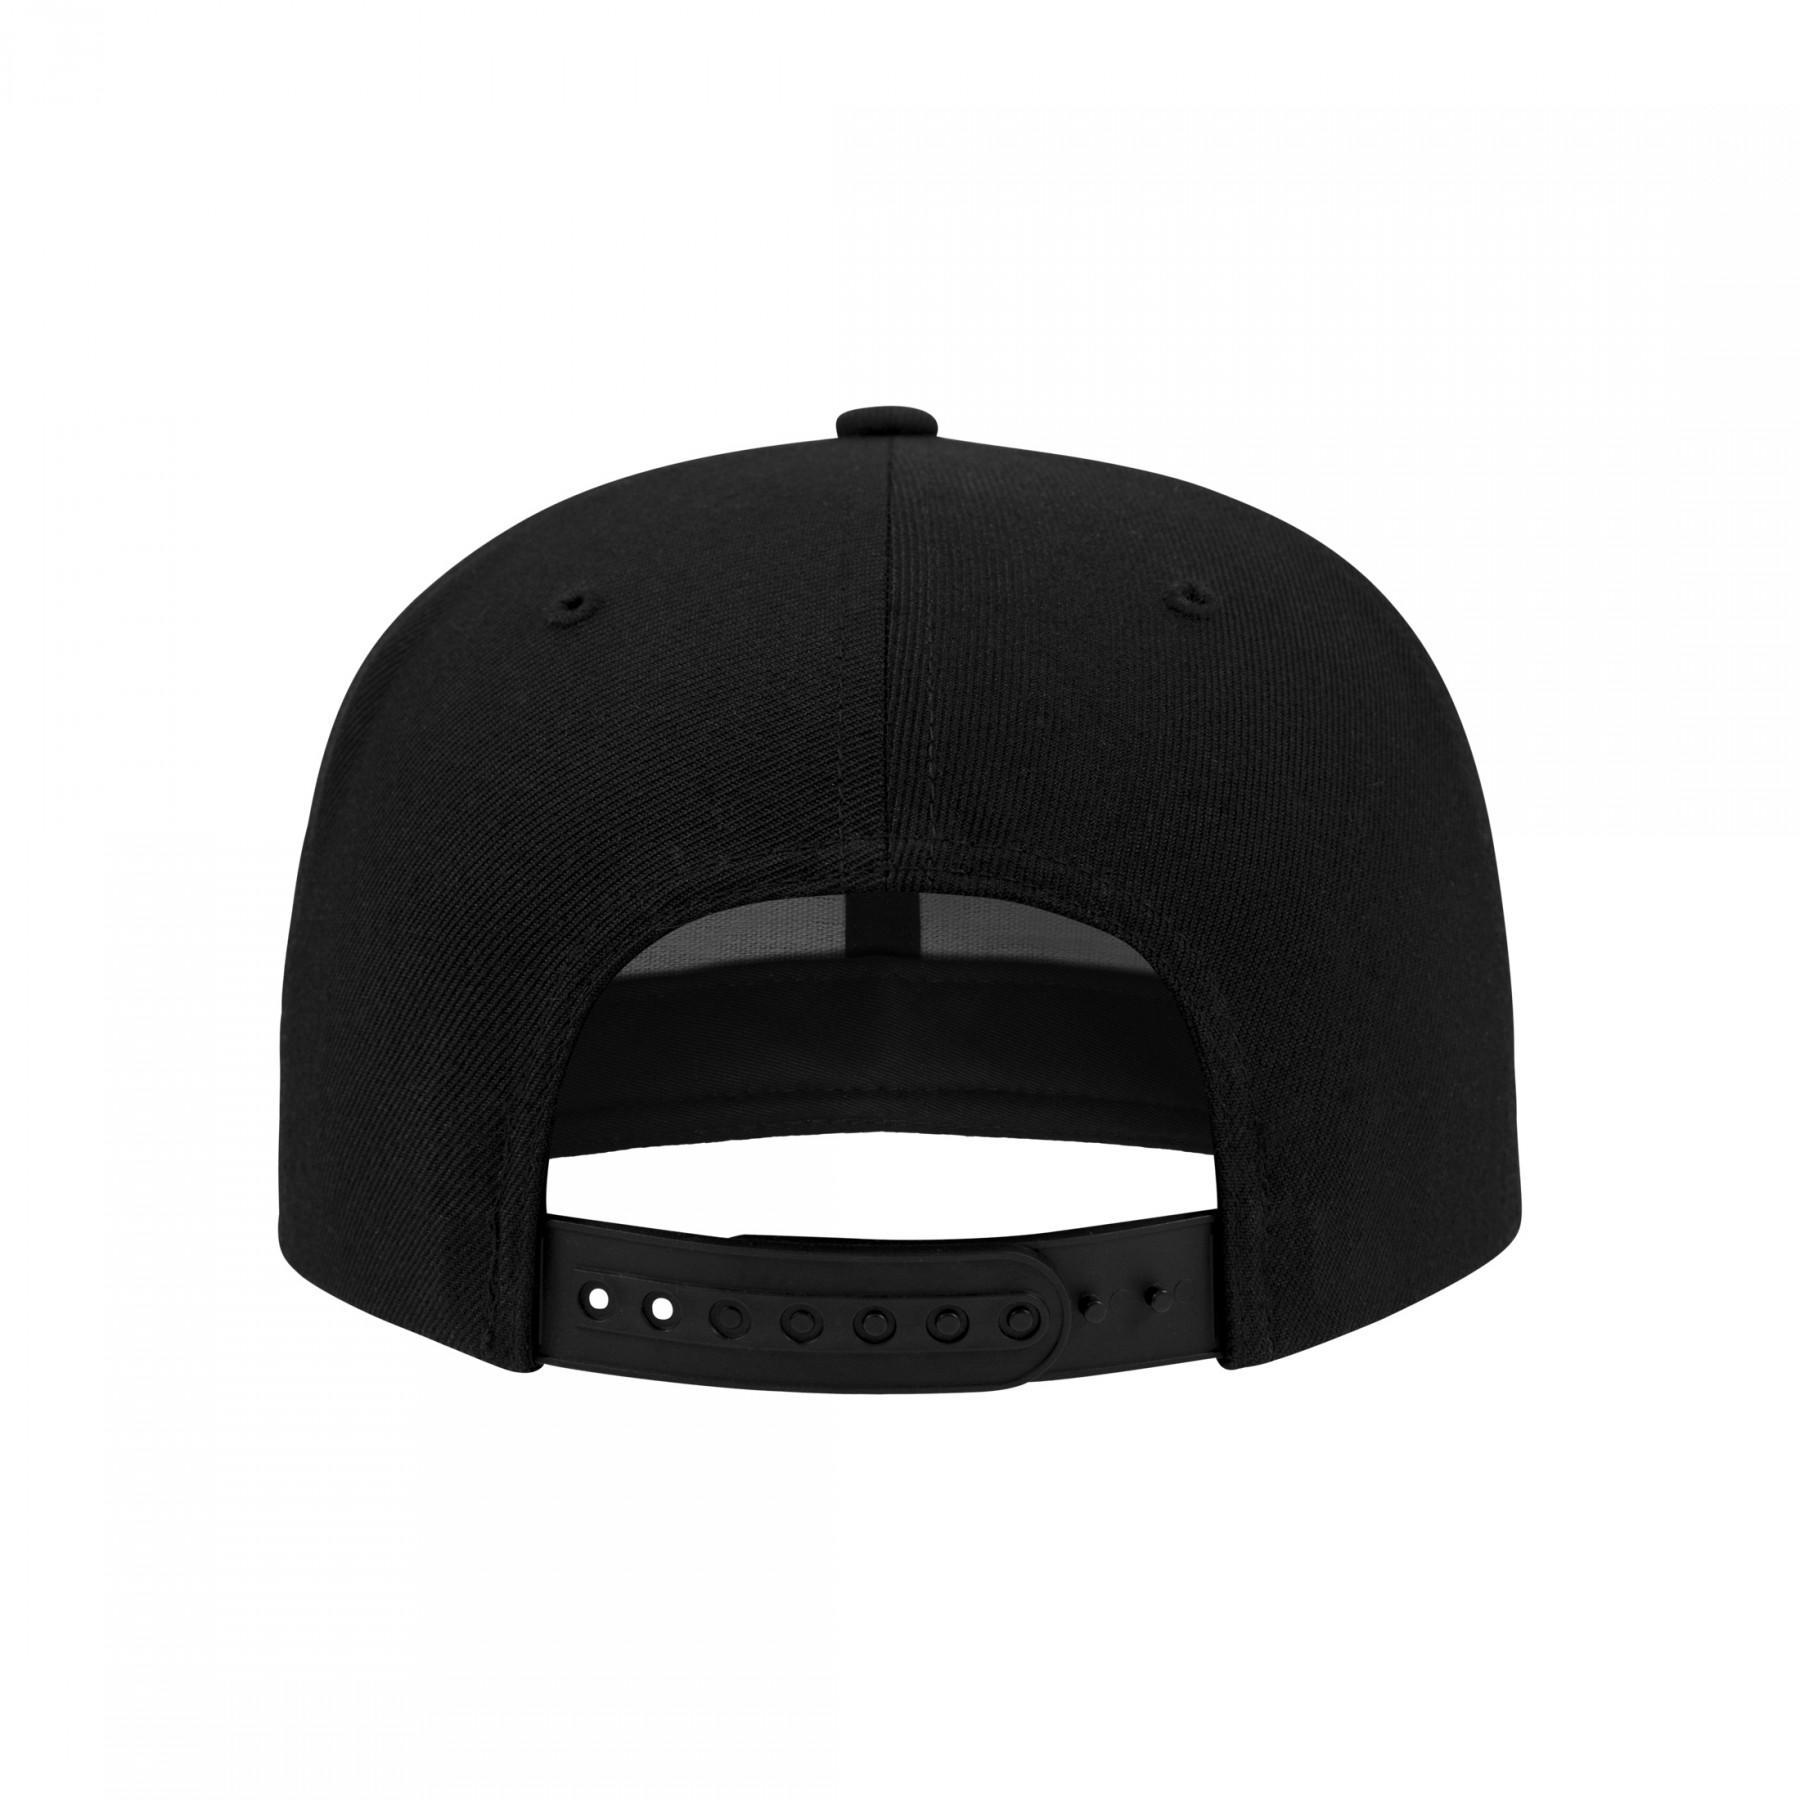 Cap Flexfit metallic visor